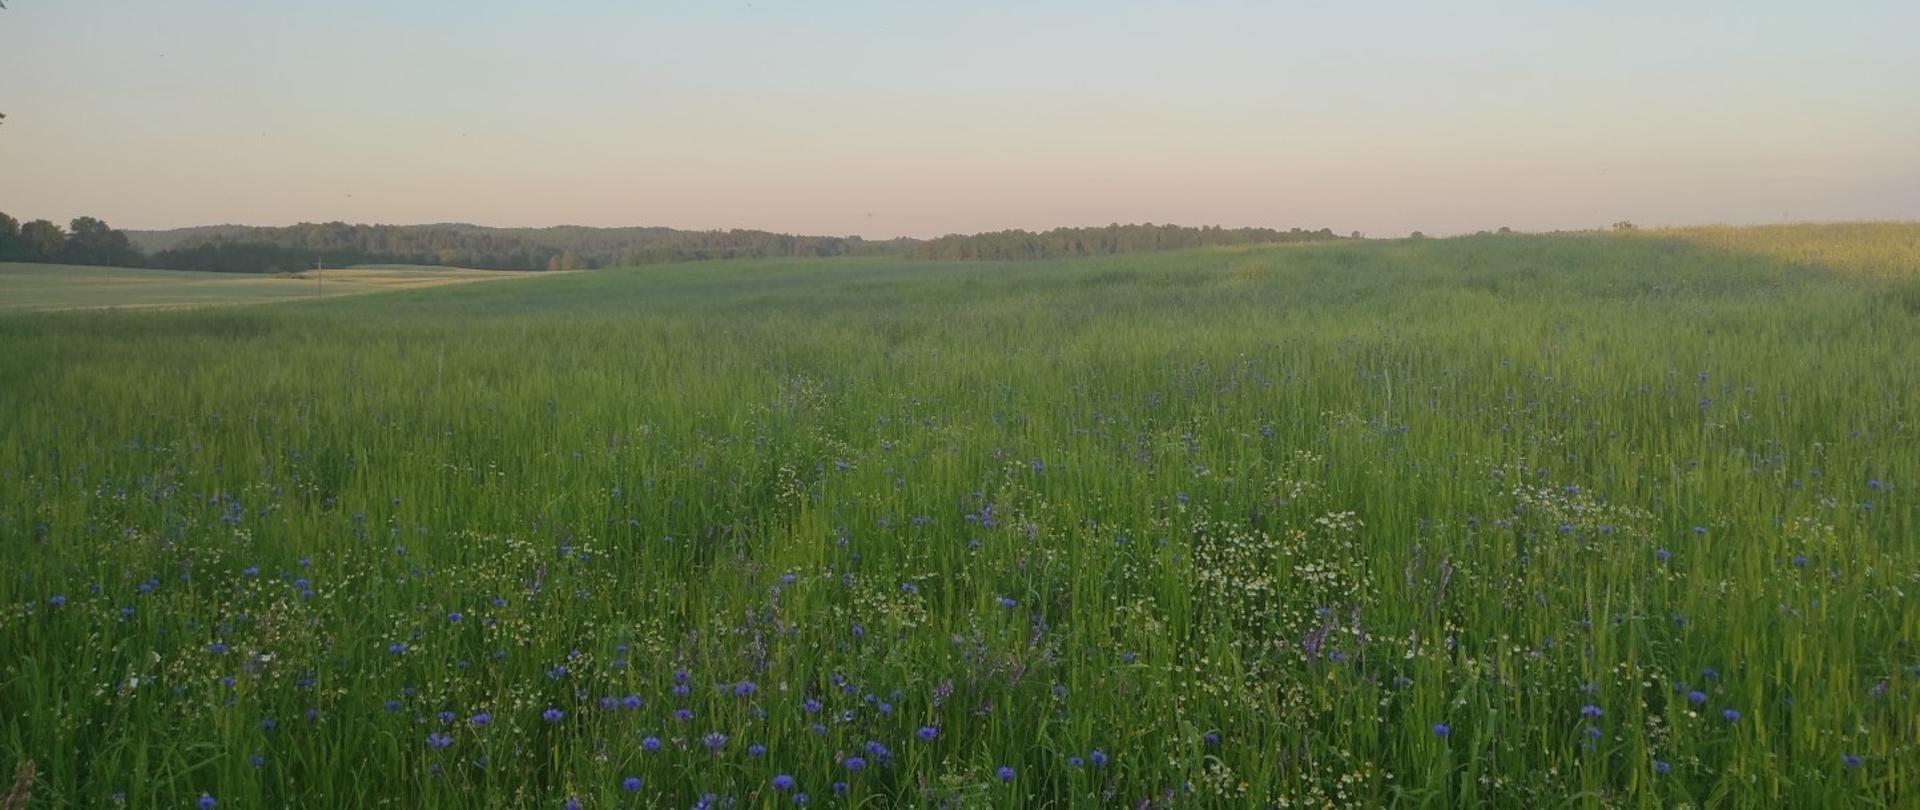 zdjęcie przedstawia łąkę. wysoka trawa, kwiatki chabry i rumianek